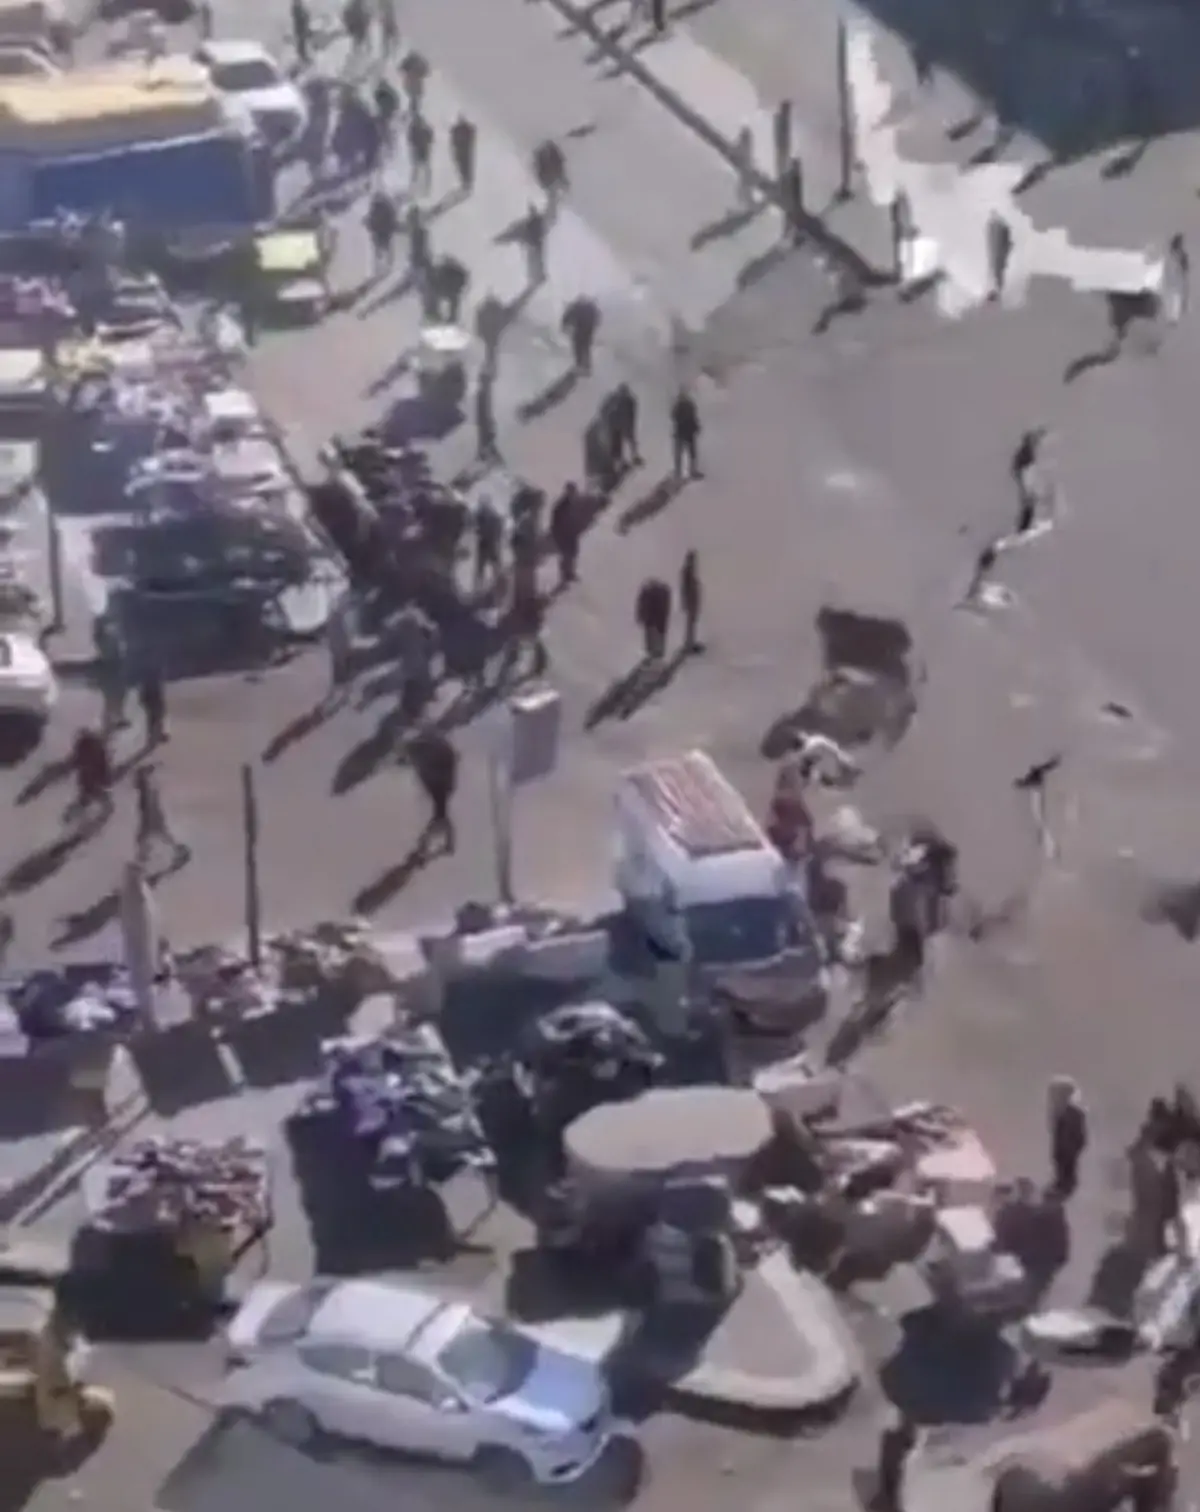 لحظه وحشتناک انفجار انتحاری در بغداد + ویدئو